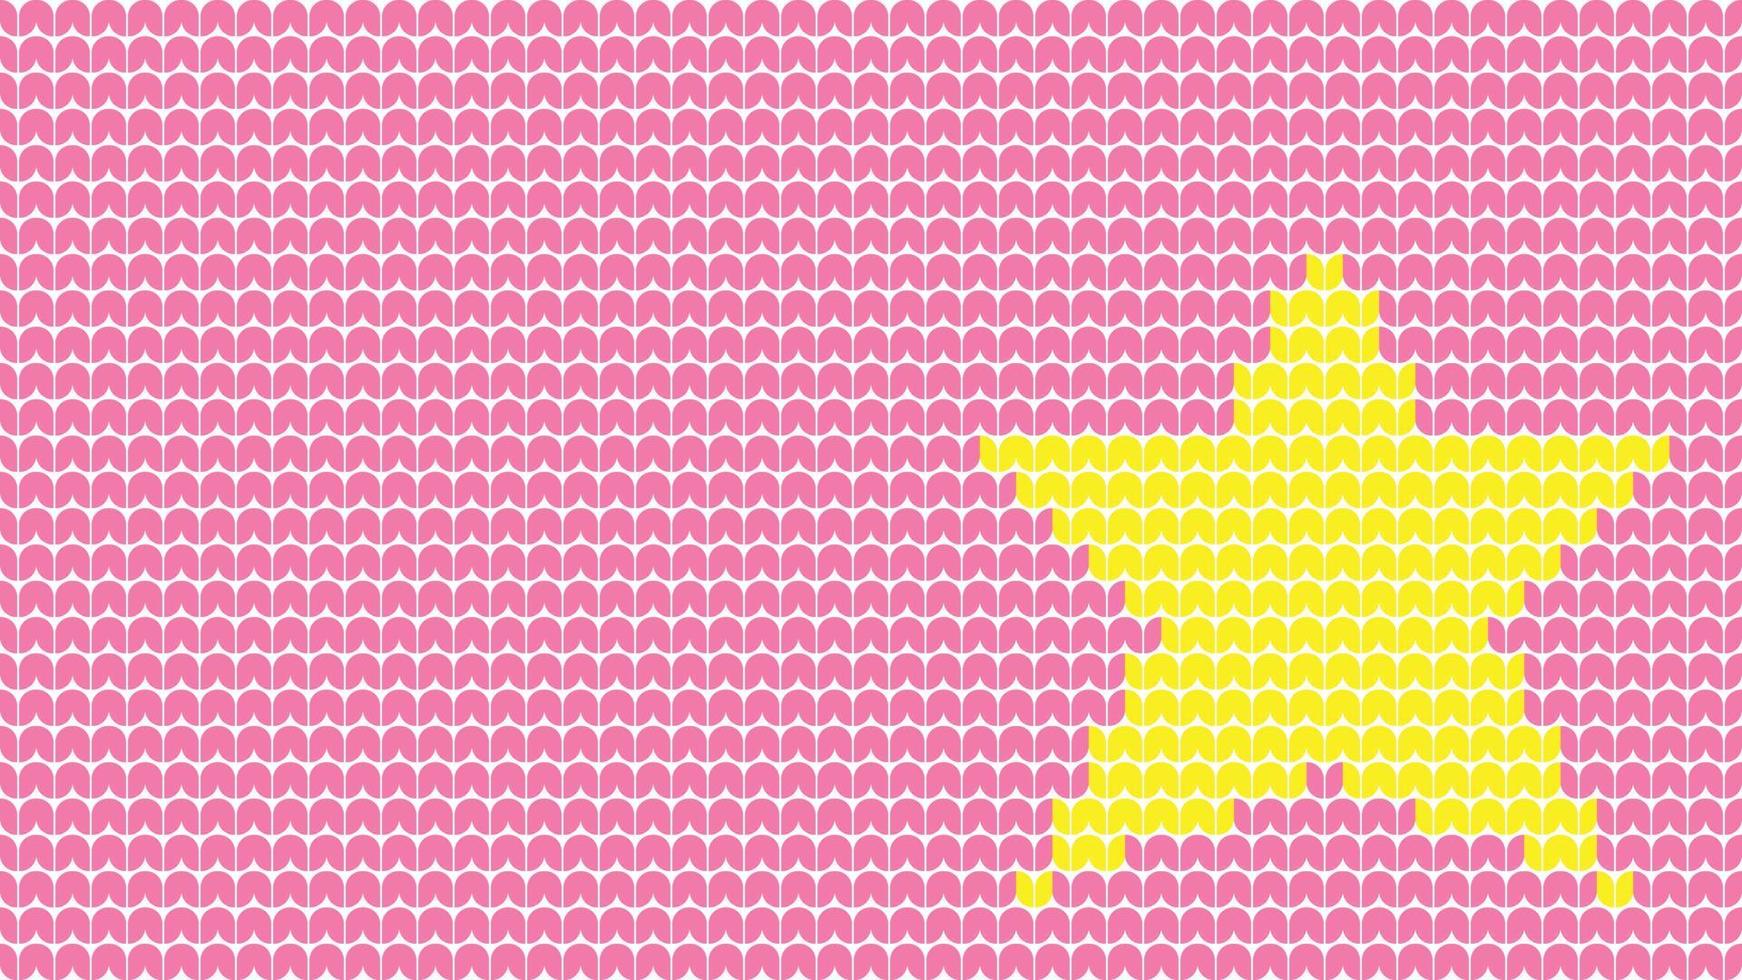 borda de padrão de estrela de tricô em fundo rosa, borda de padrão étnico de lâmpada de tricô feliz natal e feliz inverno cartaz de vetor